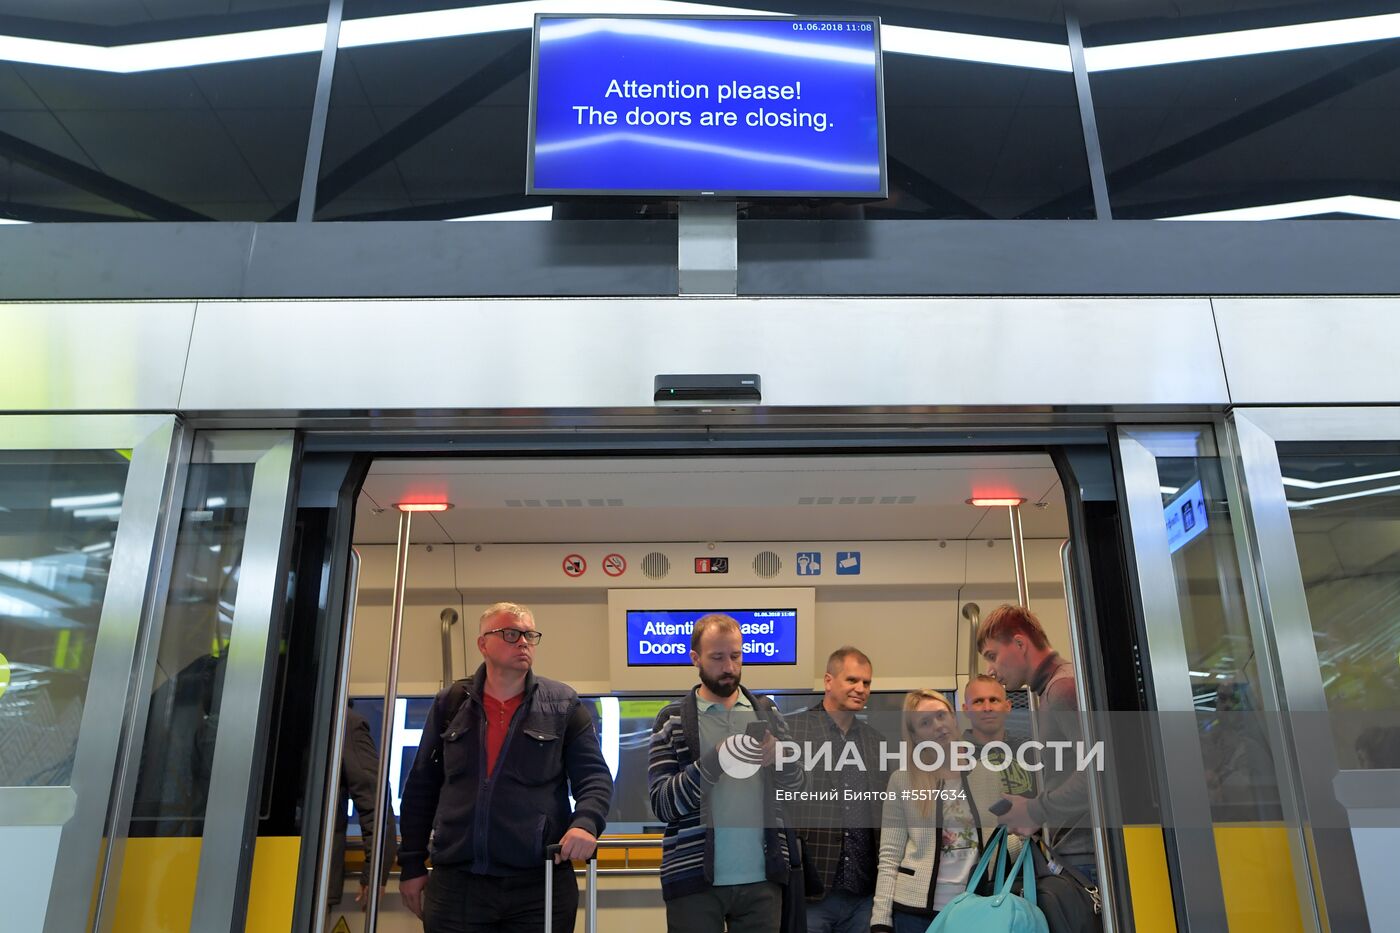 Новый пассажирский терминал B аэропорта "Шереметьево"